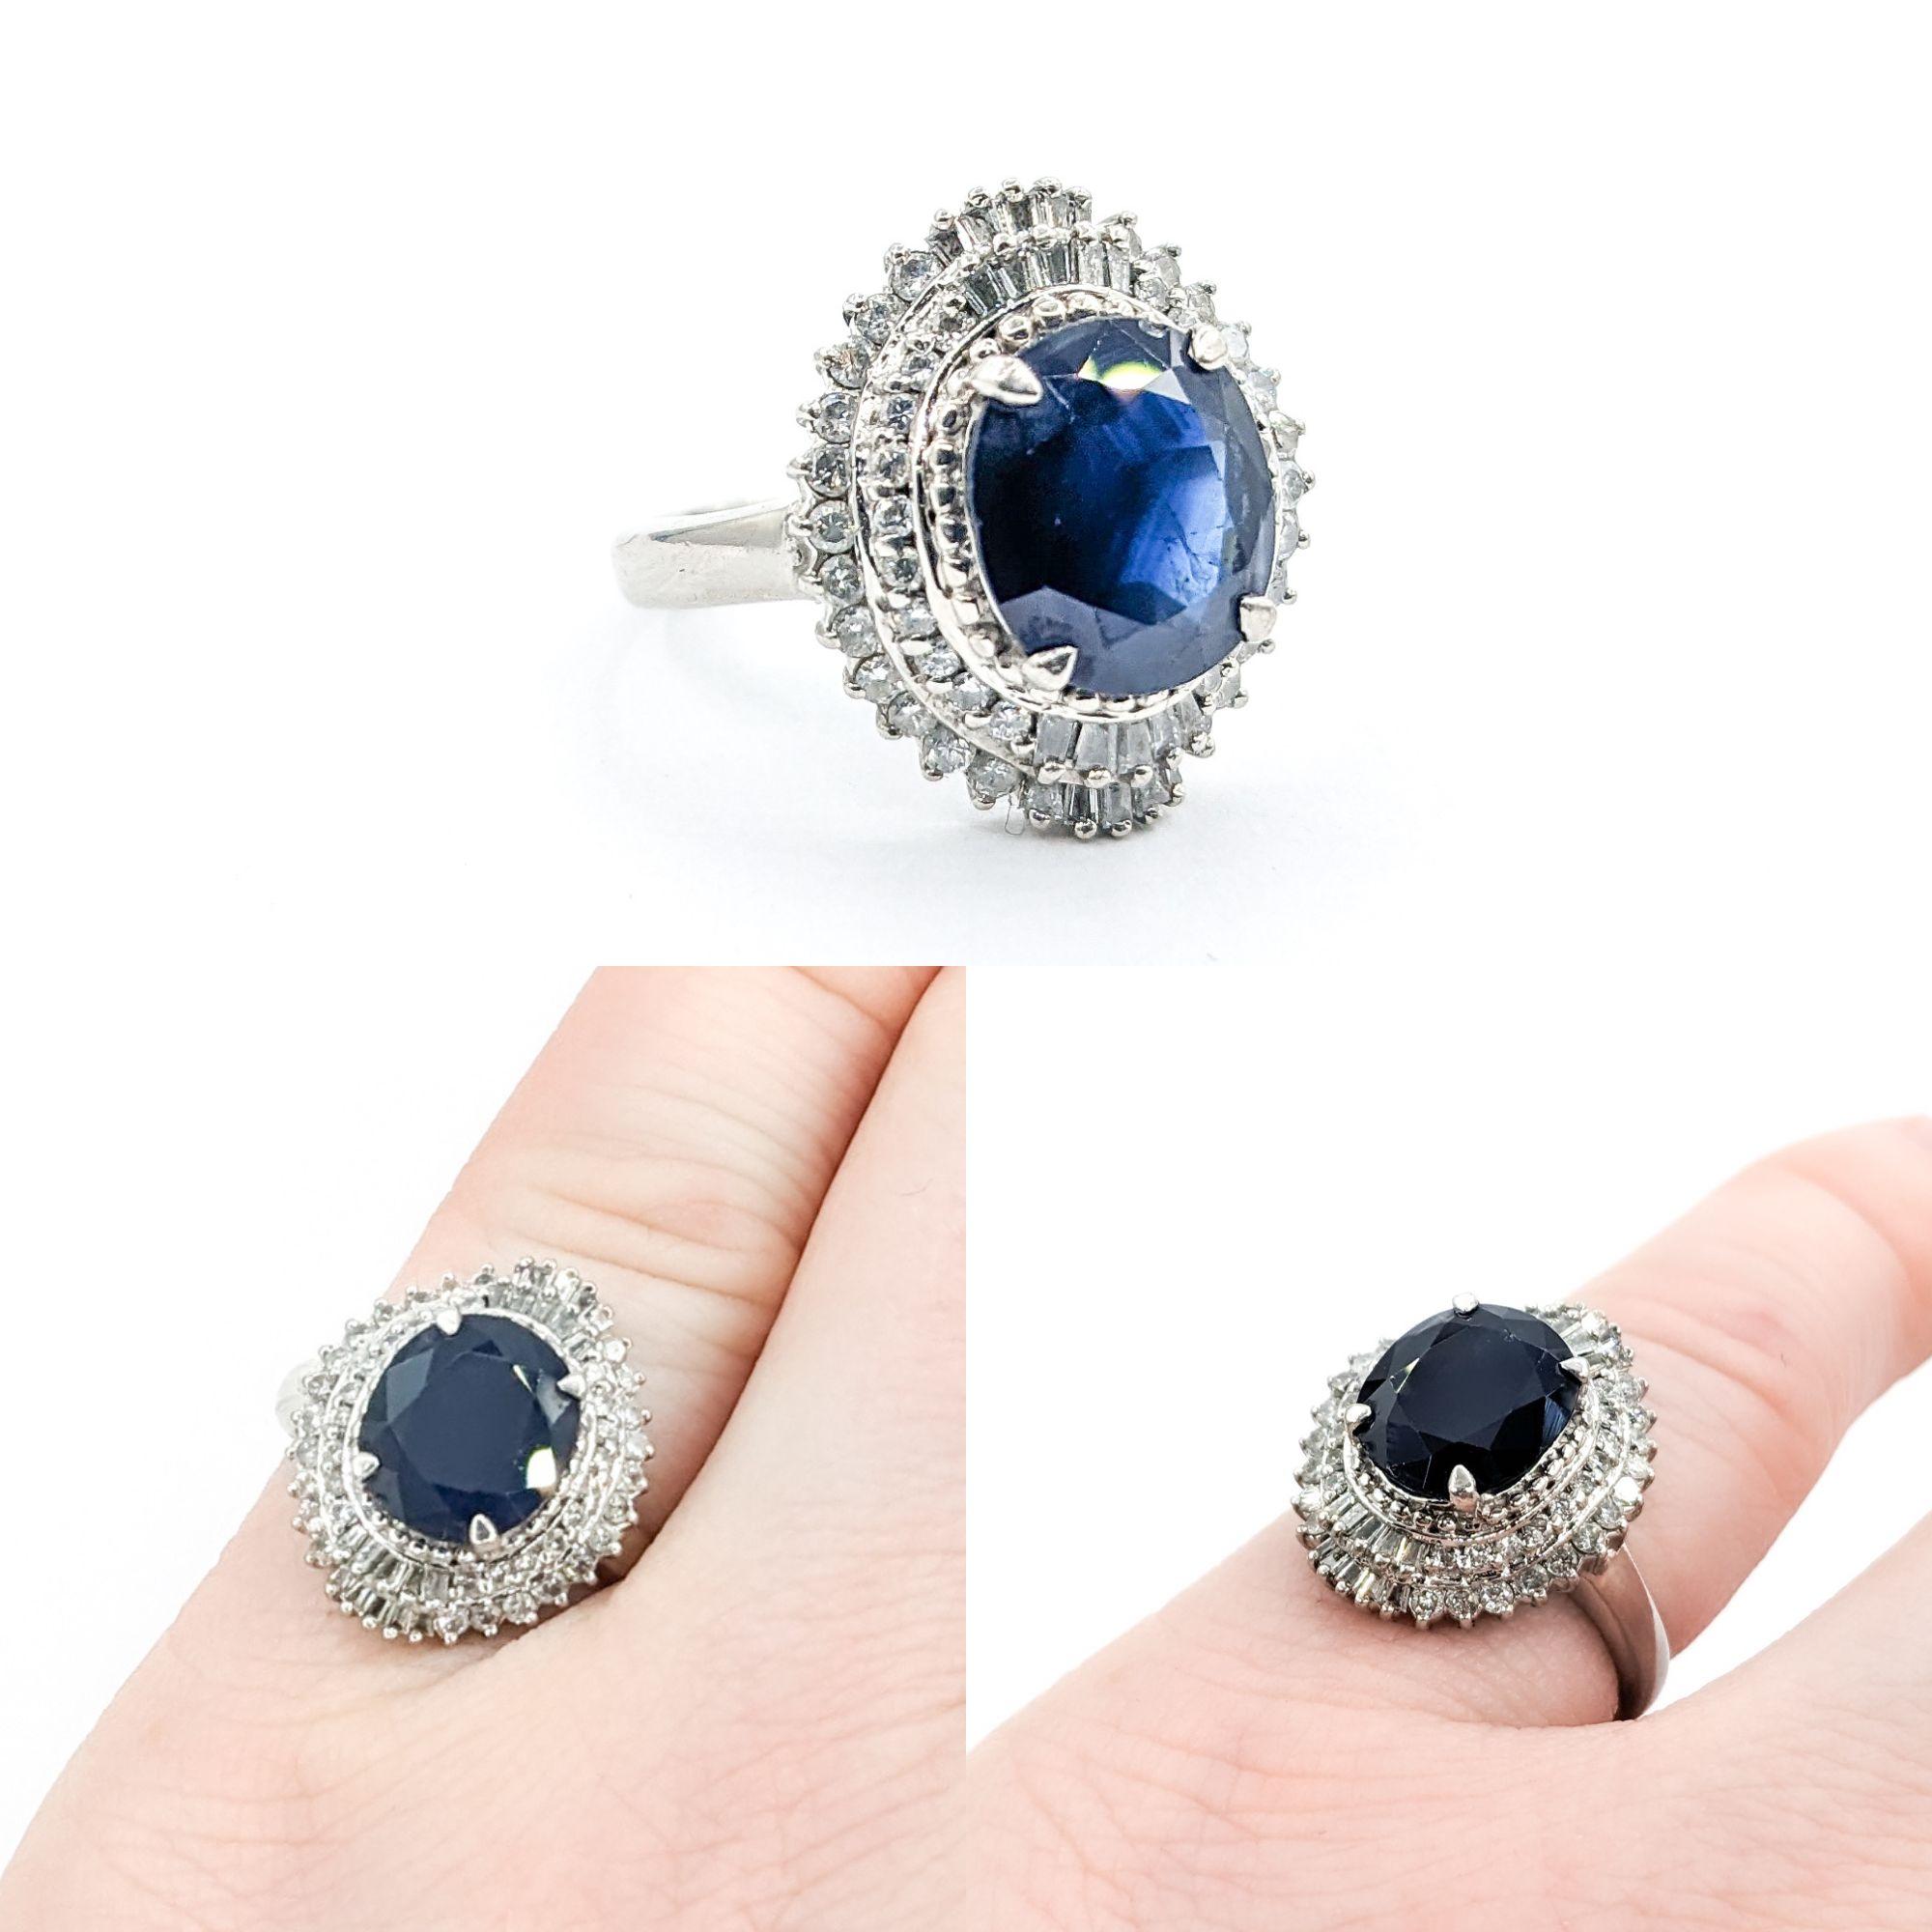 3,4ct Blauer Saphir & Diamant Ring in Platin

Wir stellen einen exquisiten Edelstein-Mode-Ring vor, der meisterhaft aus 900pt Platin gefertigt ist. Dieses fesselnde Stück zeigt einen atemberaubenden 3,4ct Saphir Mittelstück, ergänzt durch 0,60ctw